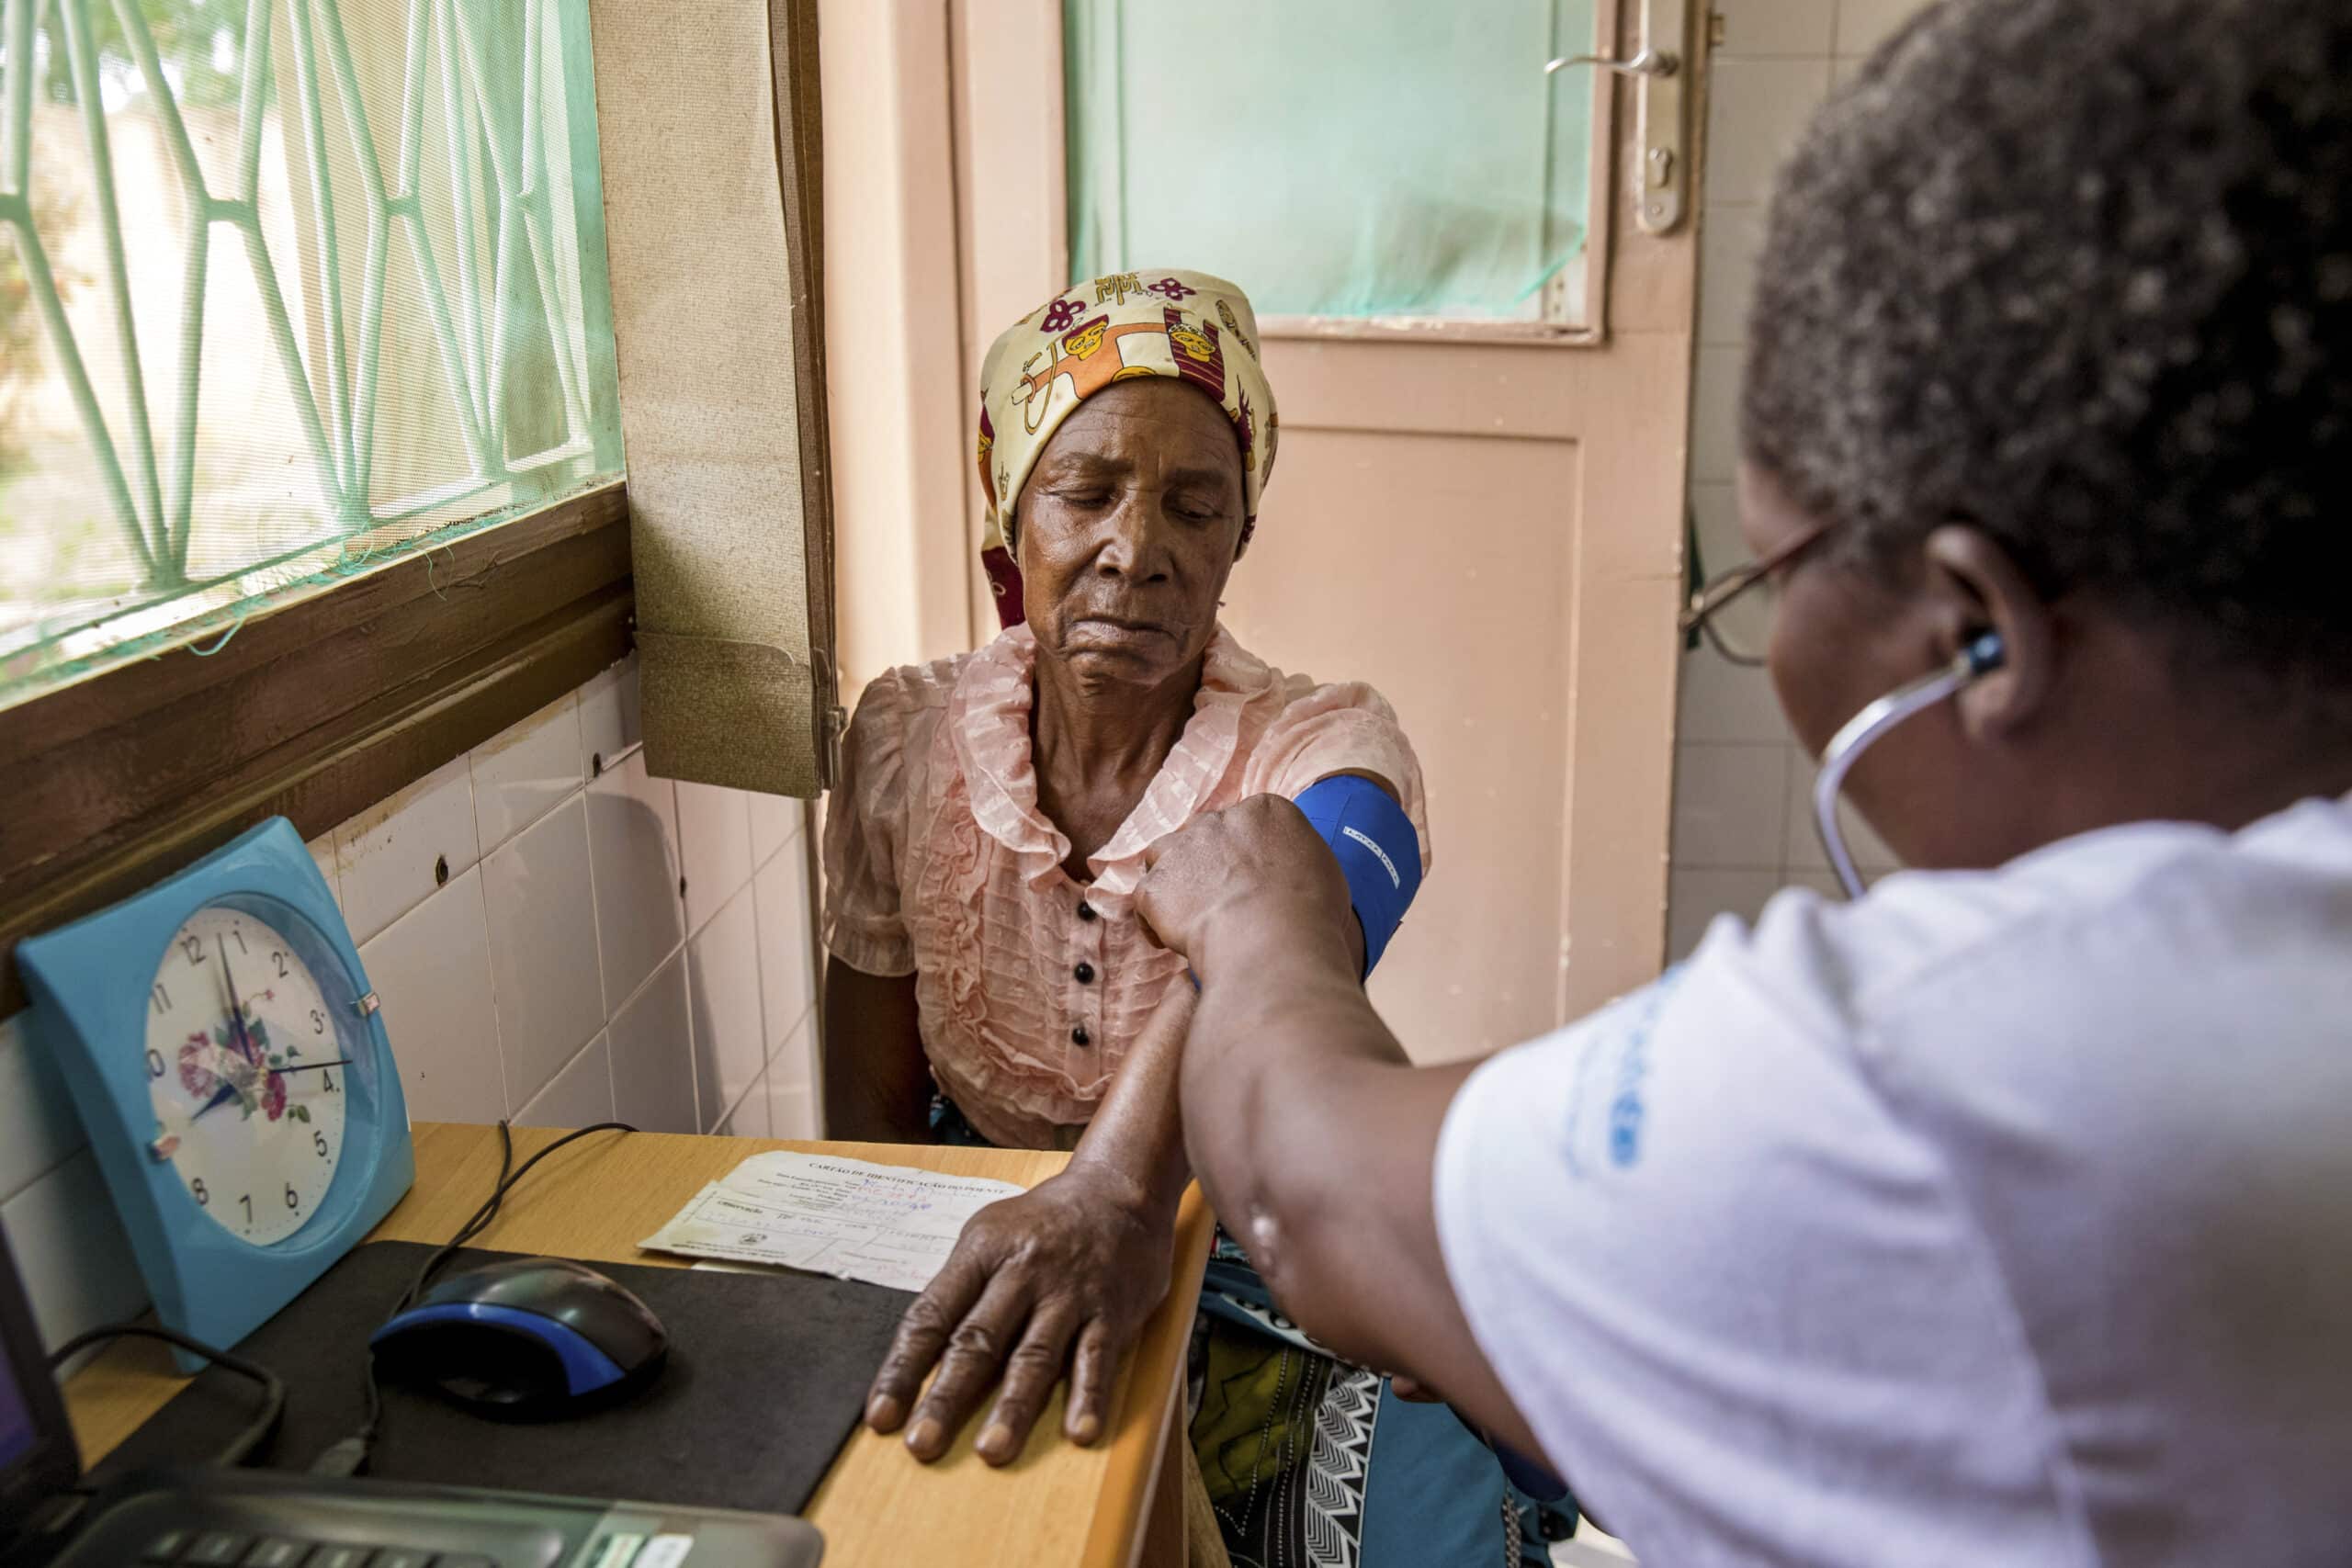 Ein Mitarbeiter des Gesundheitswesens misst den Blutdruck einer älteren Frau in einer Klinik, im Hintergrund sind eine Uhr und ein Fenster zu sehen. © Fotografie Tomas Rodriguez